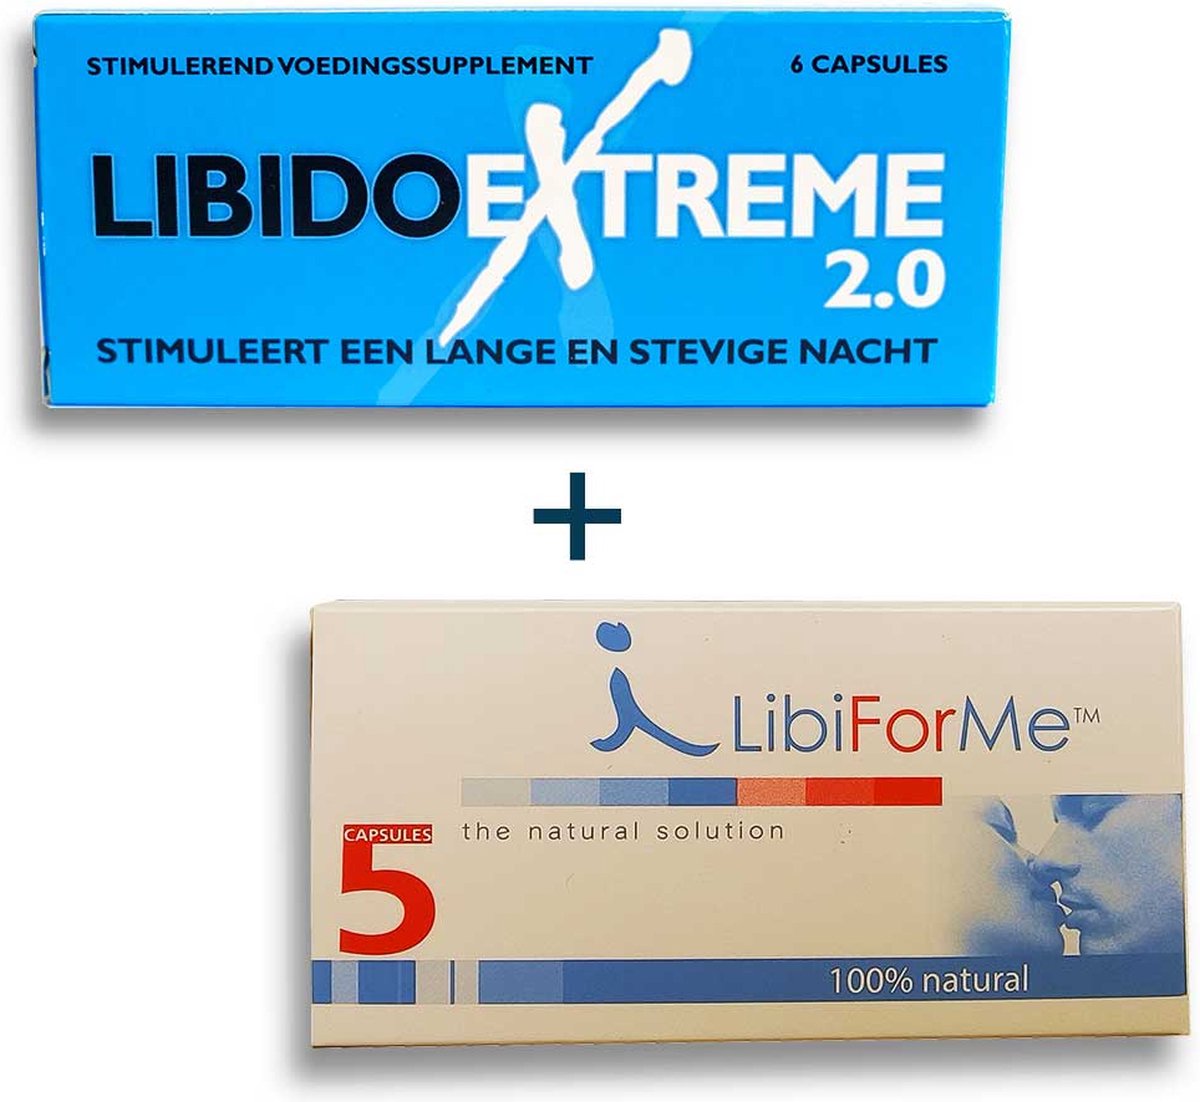 Libido Extreme 2.0 + LibiForMe / Libido Forte - Combinatie voordeel - Erectiepillen voor mannen -Nieuwe en verbeterde versie #1 Erectiepil in Nederland - Discreet geleverd. - Alternatief voor: Viagra, Levitra, Cialis, Forte, Kamagra en Performance.